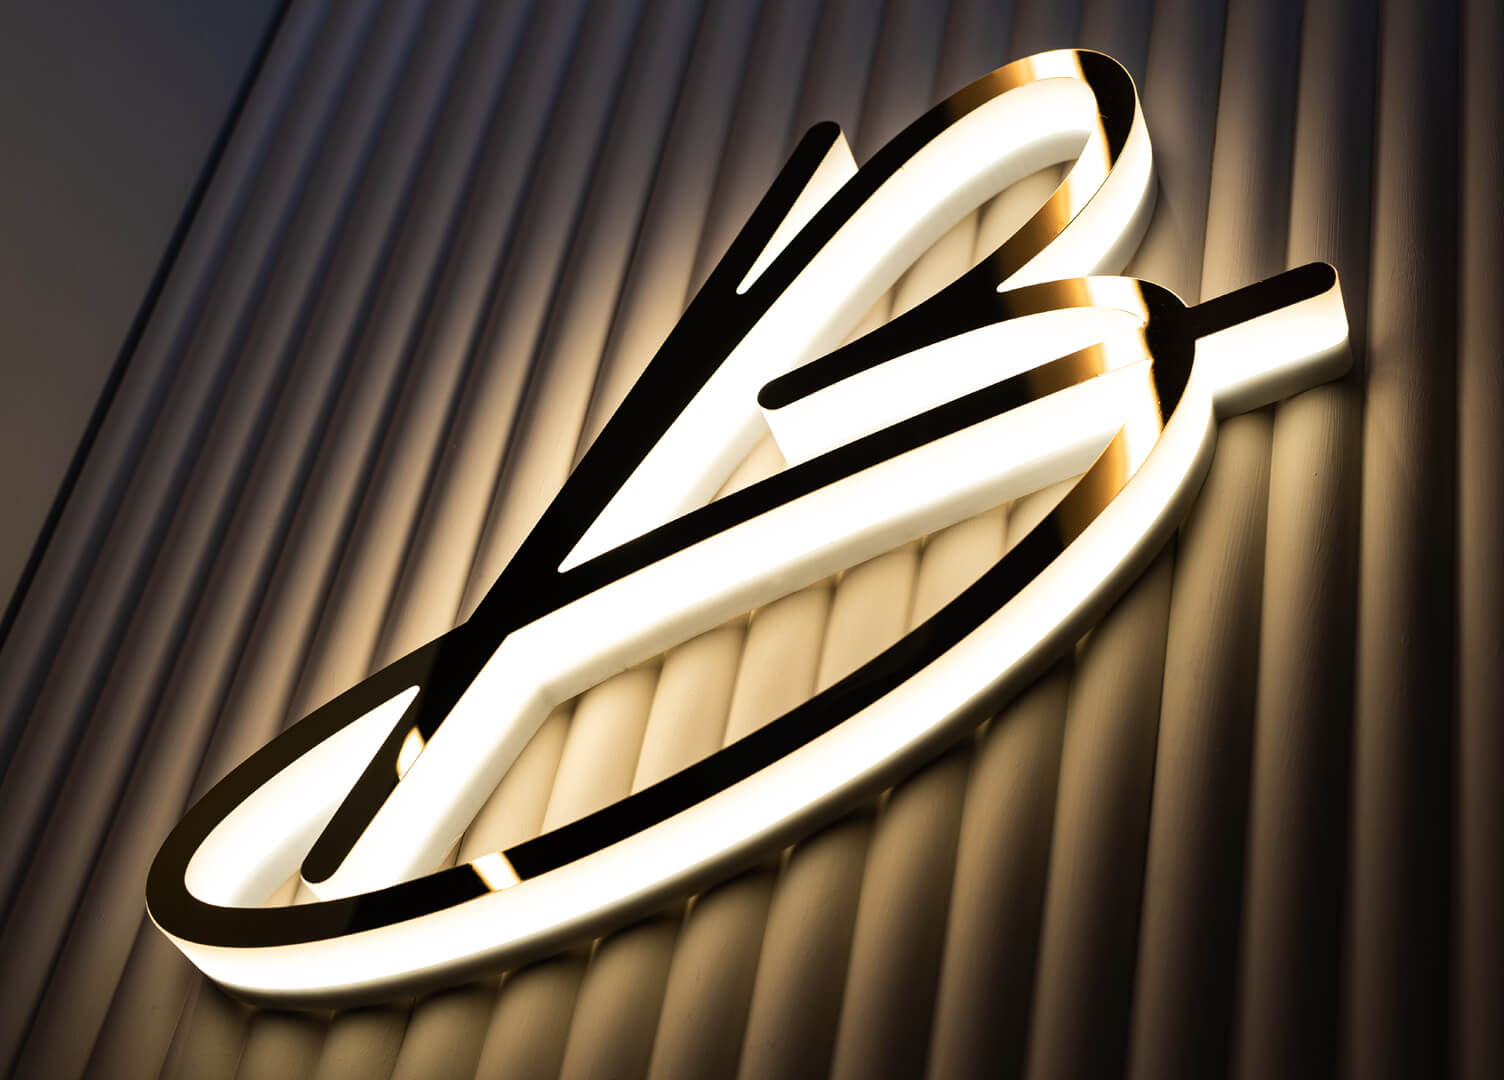 Blushington Letra B - Letra B con el logotipo de Blushington en dorado, iluminado a lo largo del contorno del LED